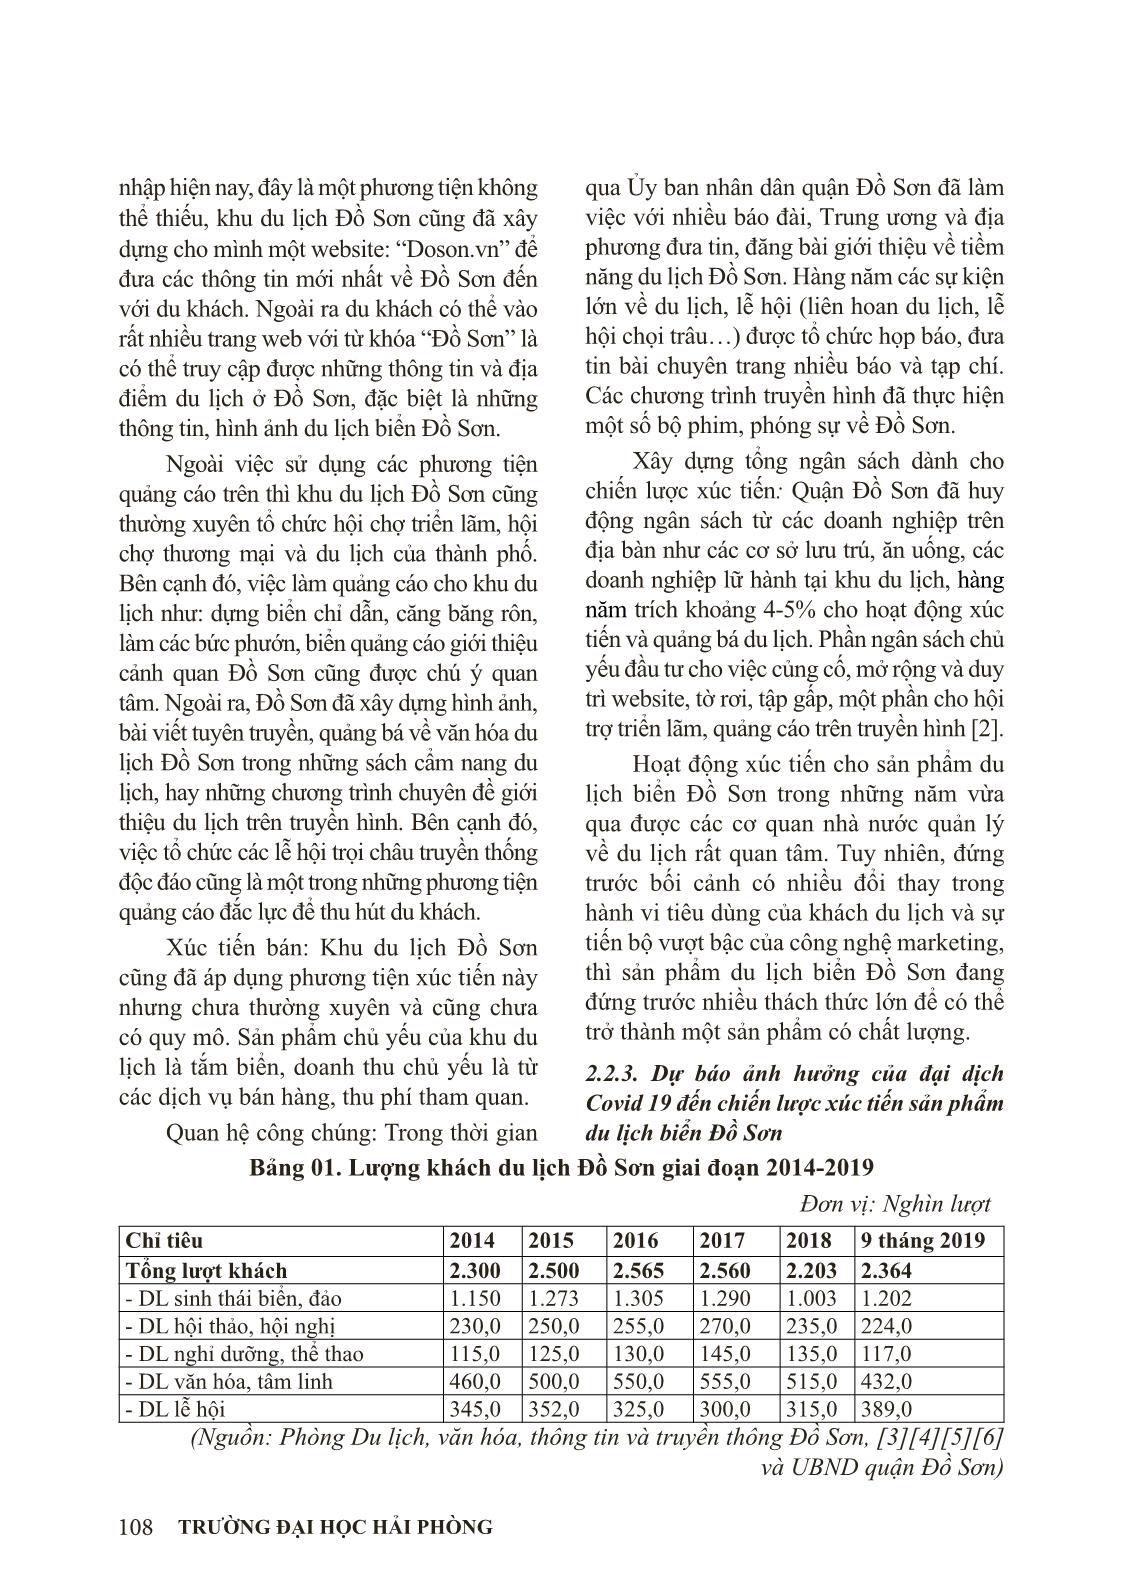 Chiến lược xúc tiến sản phẩm du lịch biển Đồ Sơn, Hải Phòng sau đại dịch Covid19 trang 5